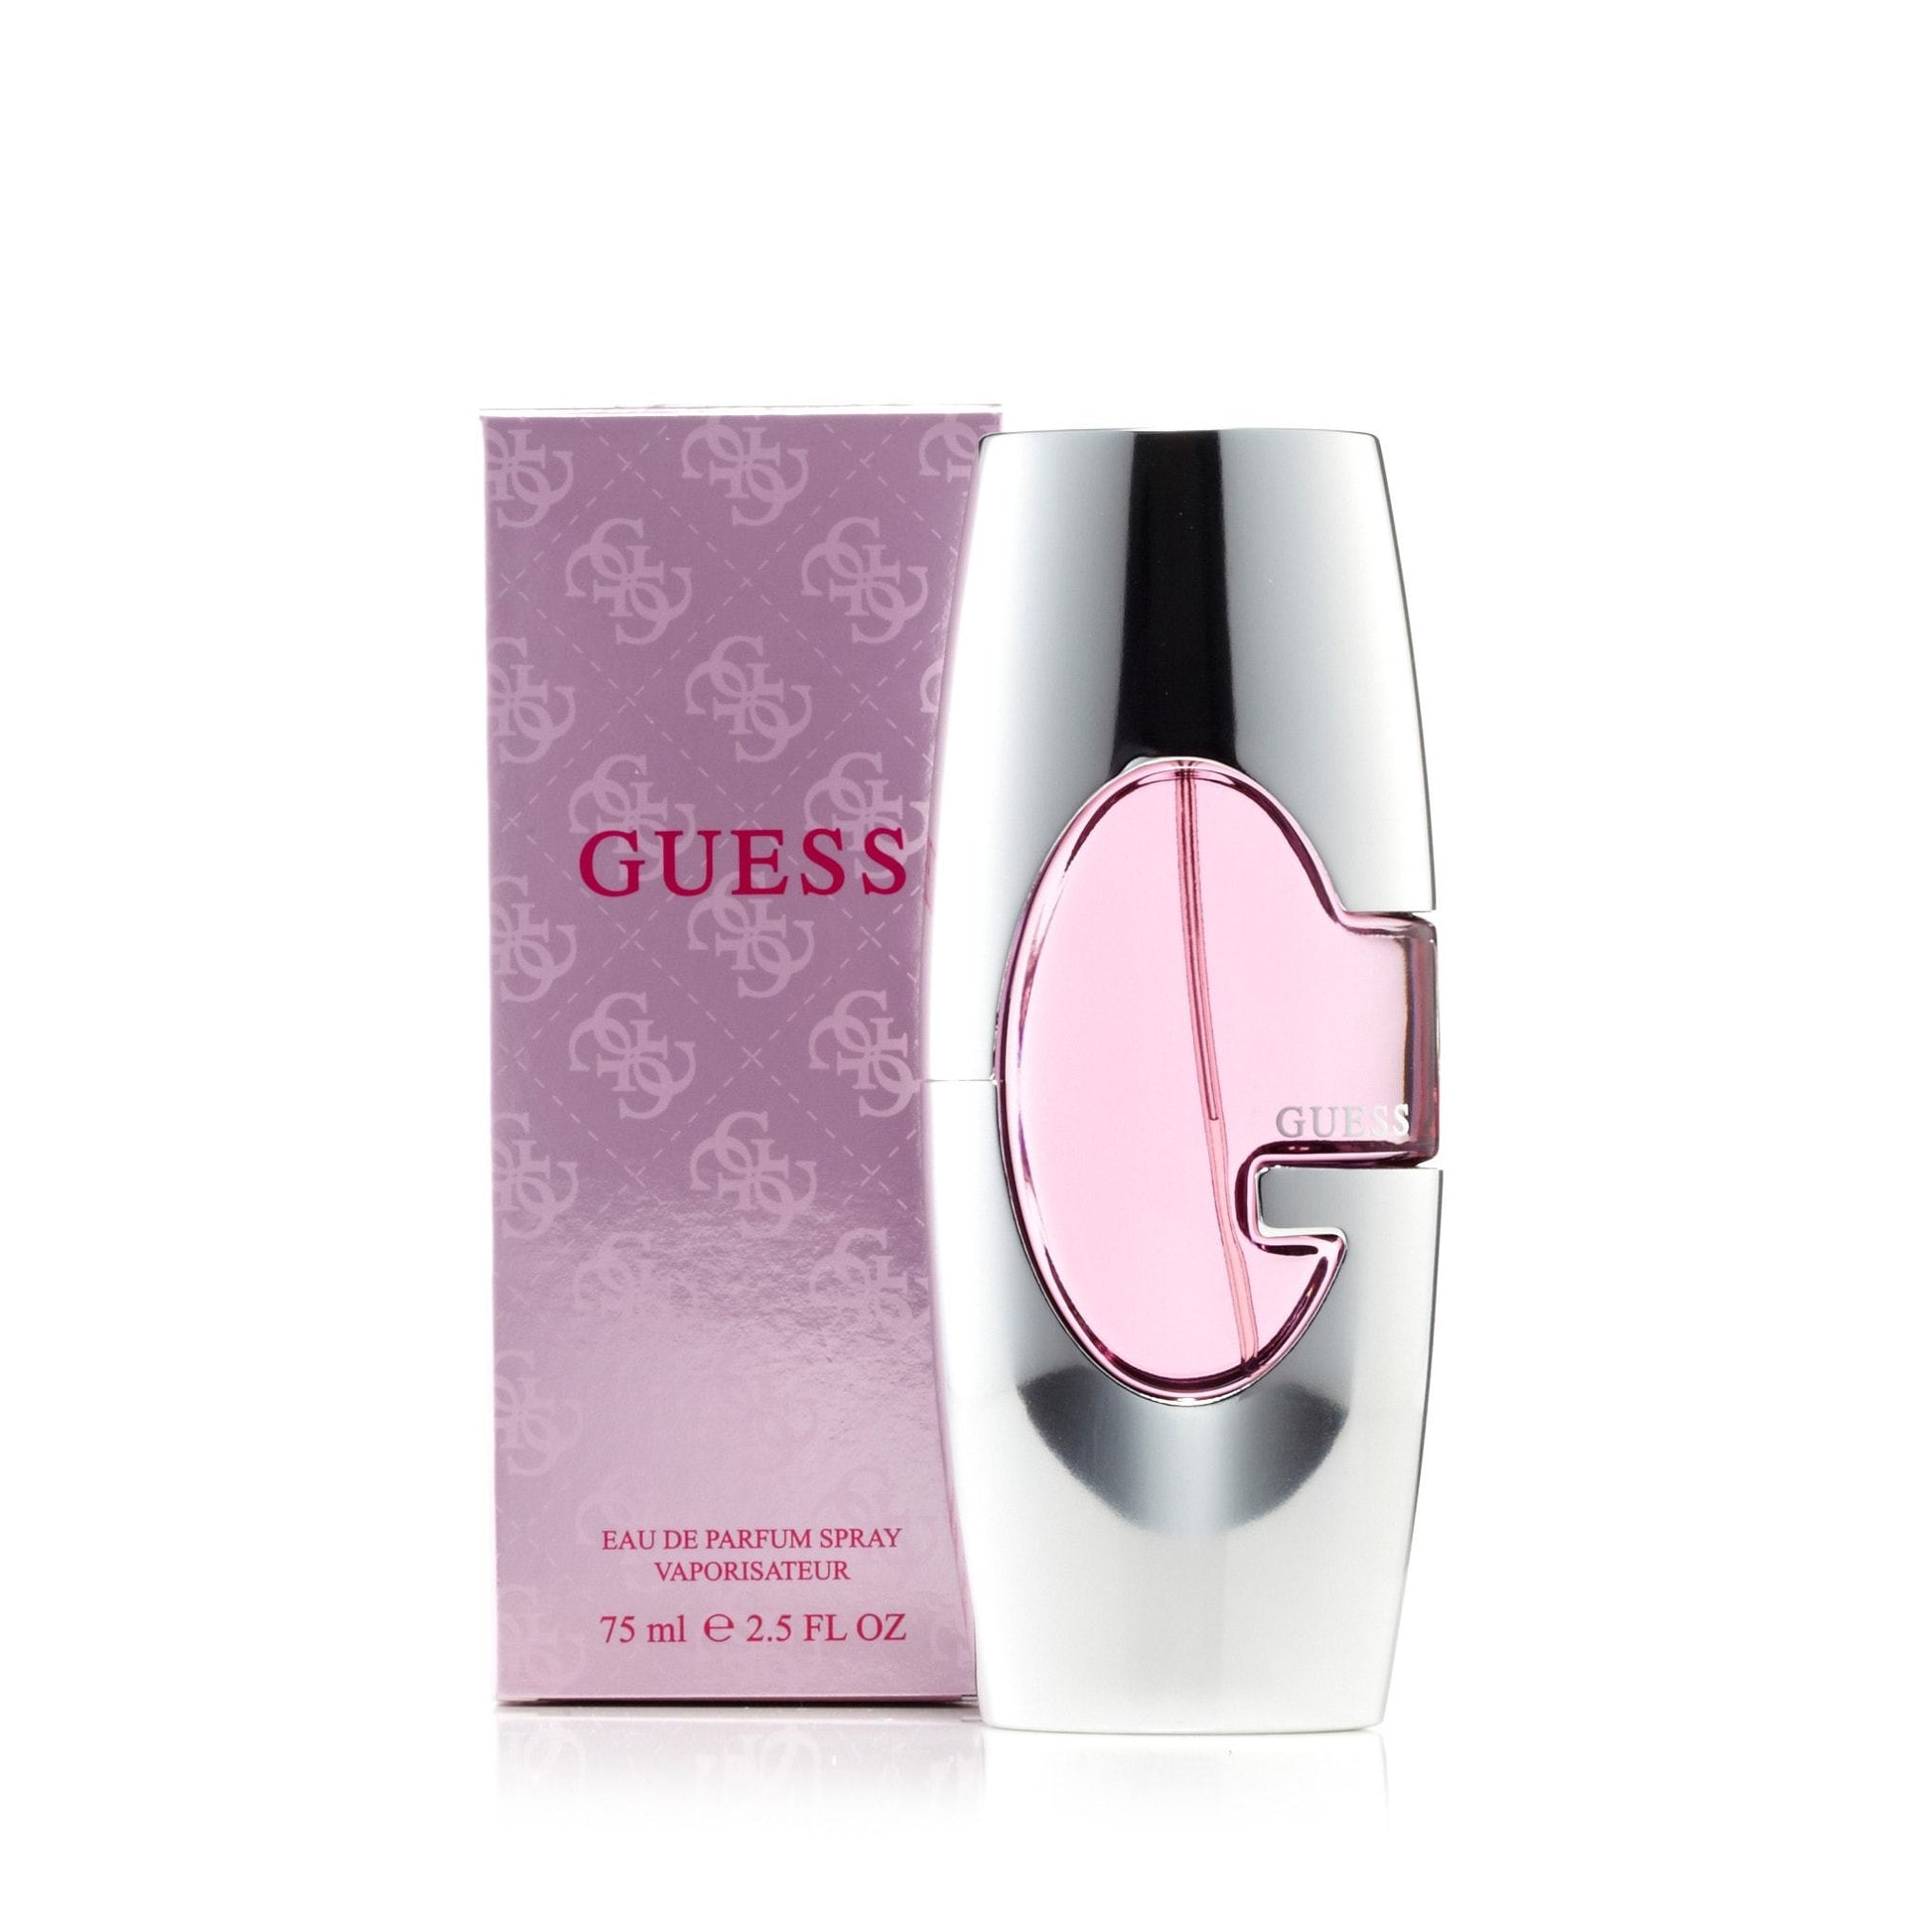 Guess Eau de Parfum Spray for Women by Guess, Product image 4